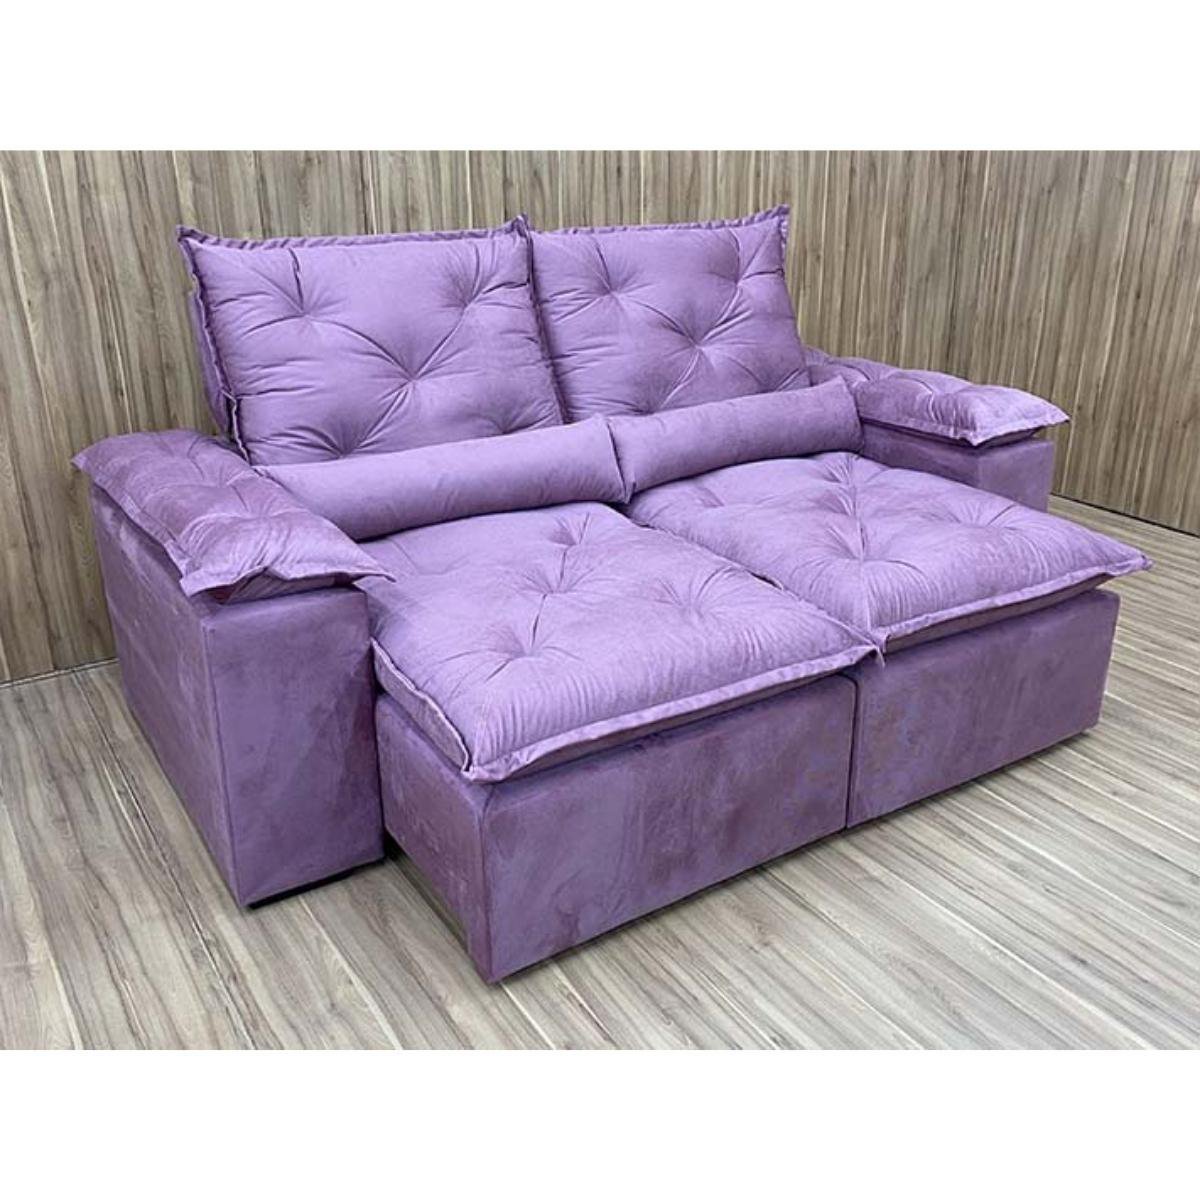 Sofa Reclinavel Retratil Design Elegante Athena 2,30m Veludo Cor:Violeta - 1